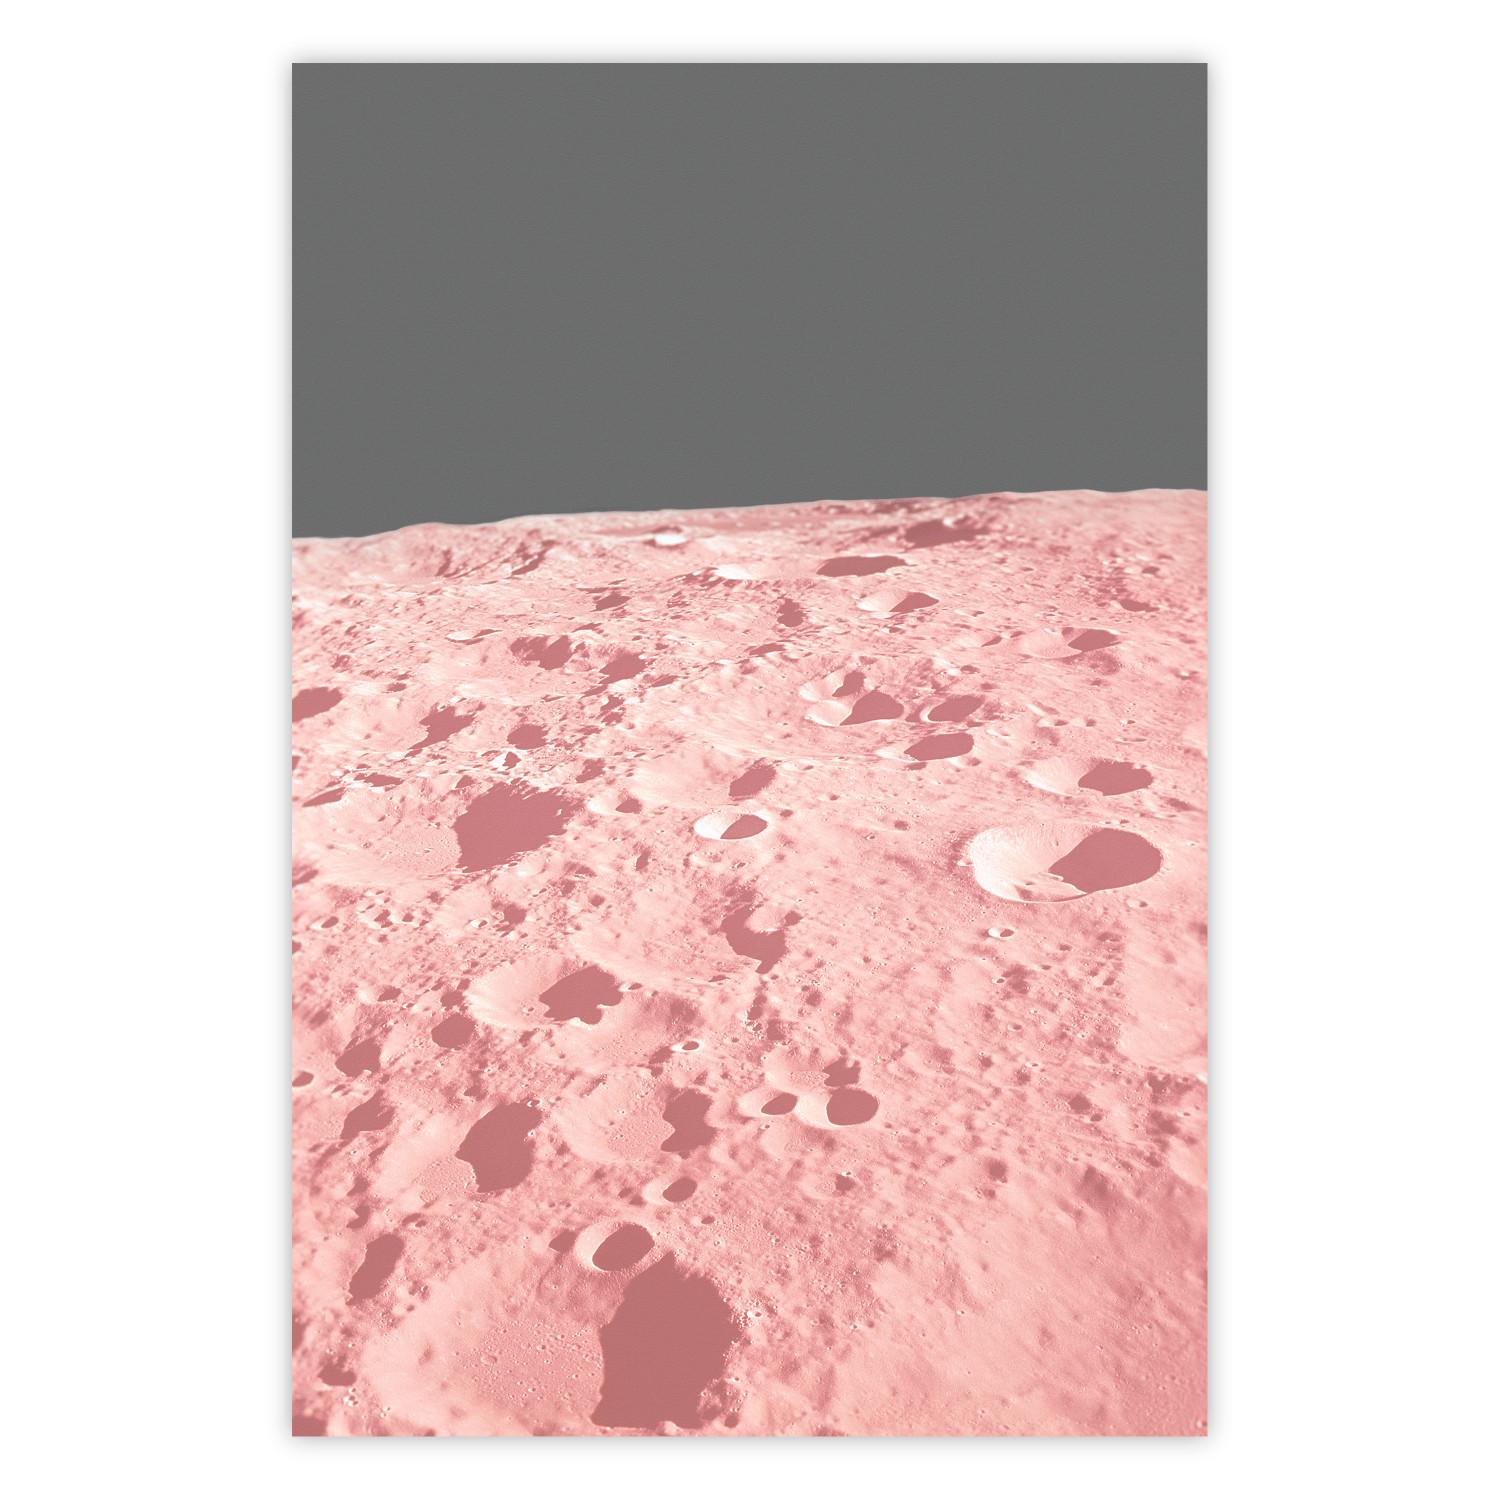 Póster Luna rosa - textura lunar sobre fondo gris uniforme